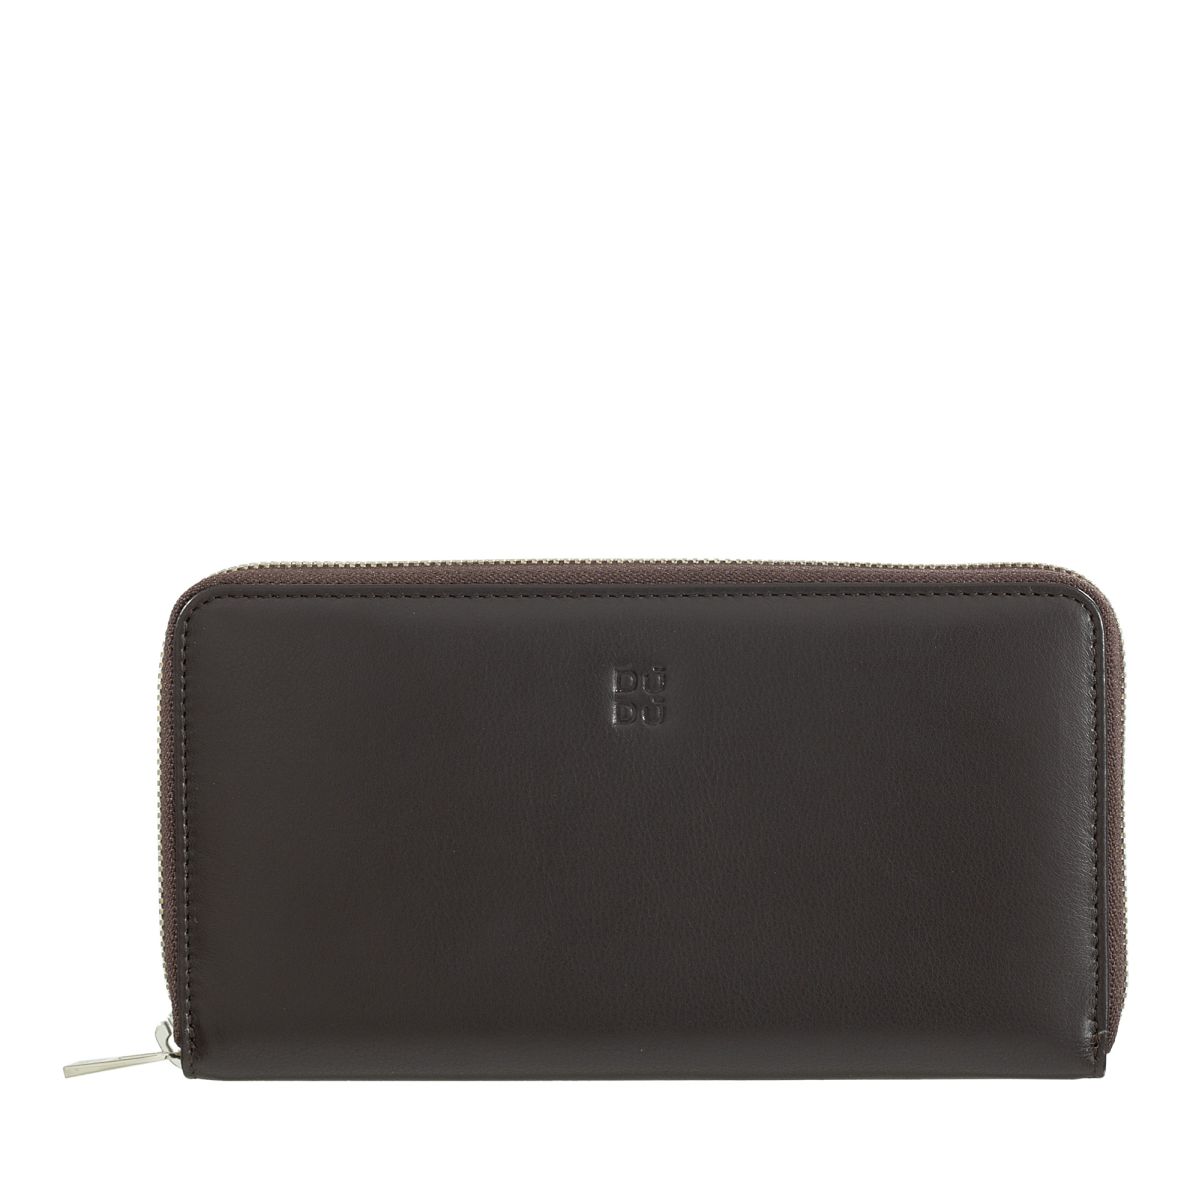 DuDu Zip around RFID wallet - Dark Brown